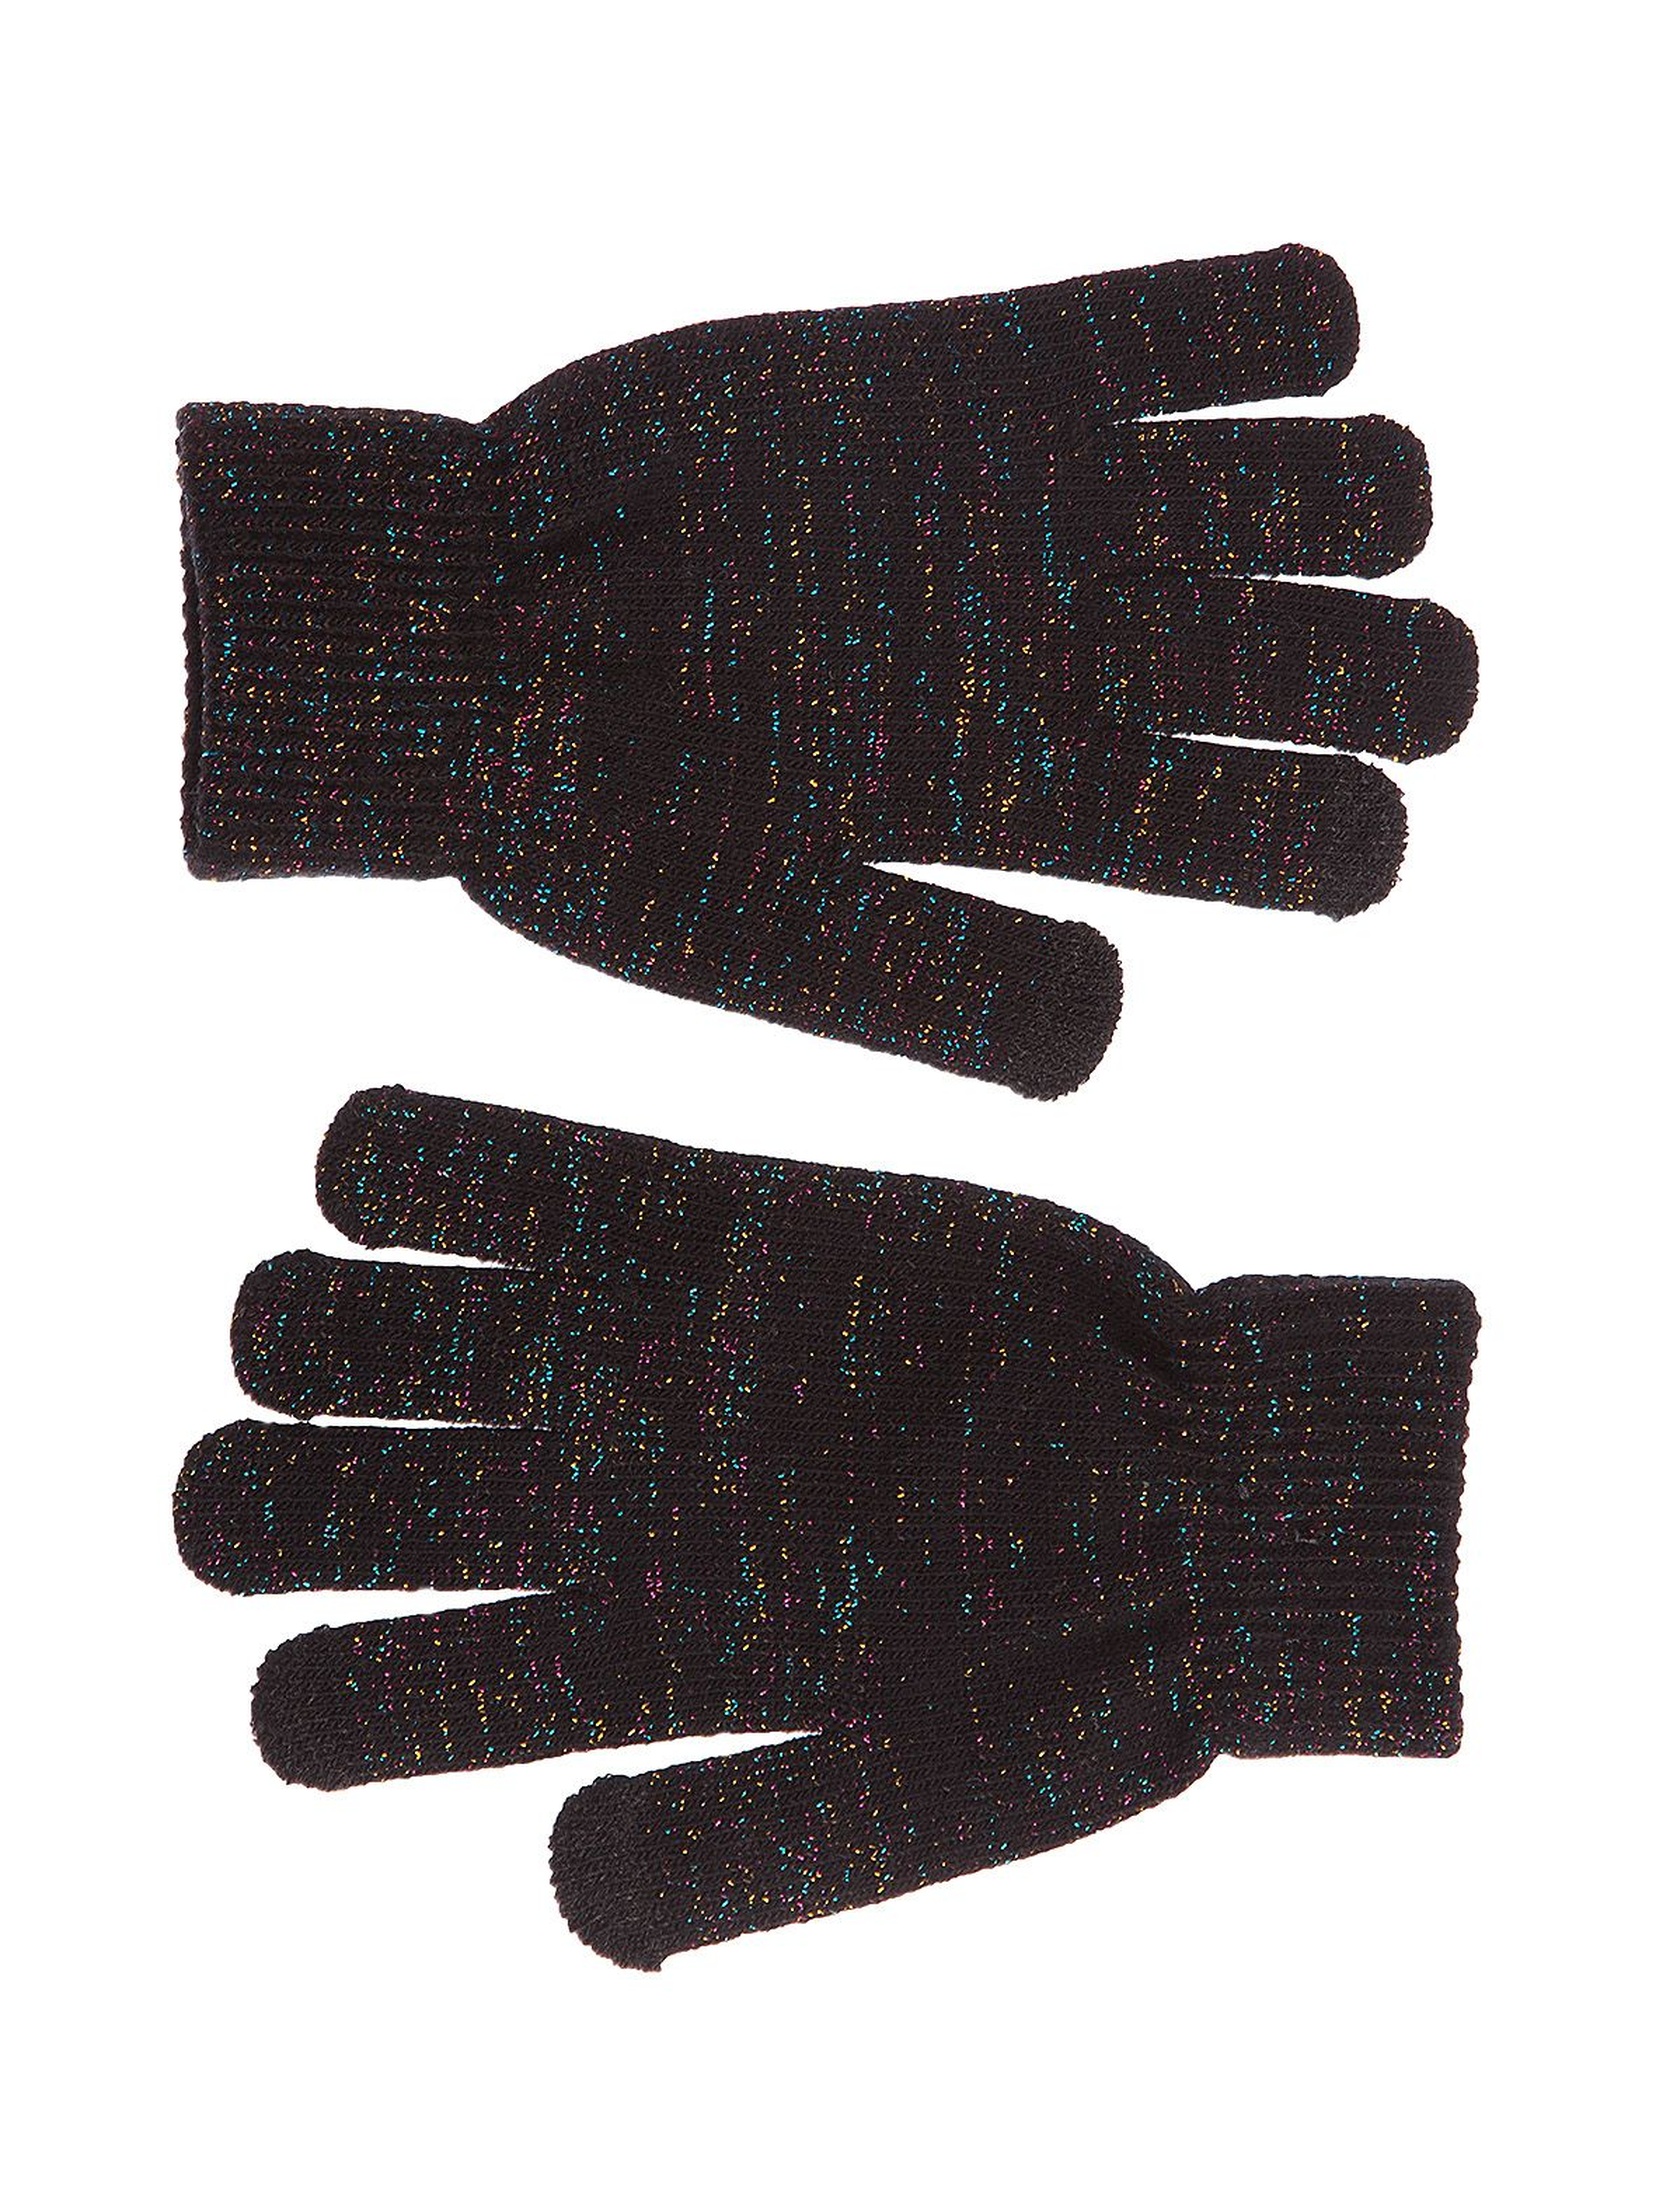 Rękawiczki dla dziewczynki